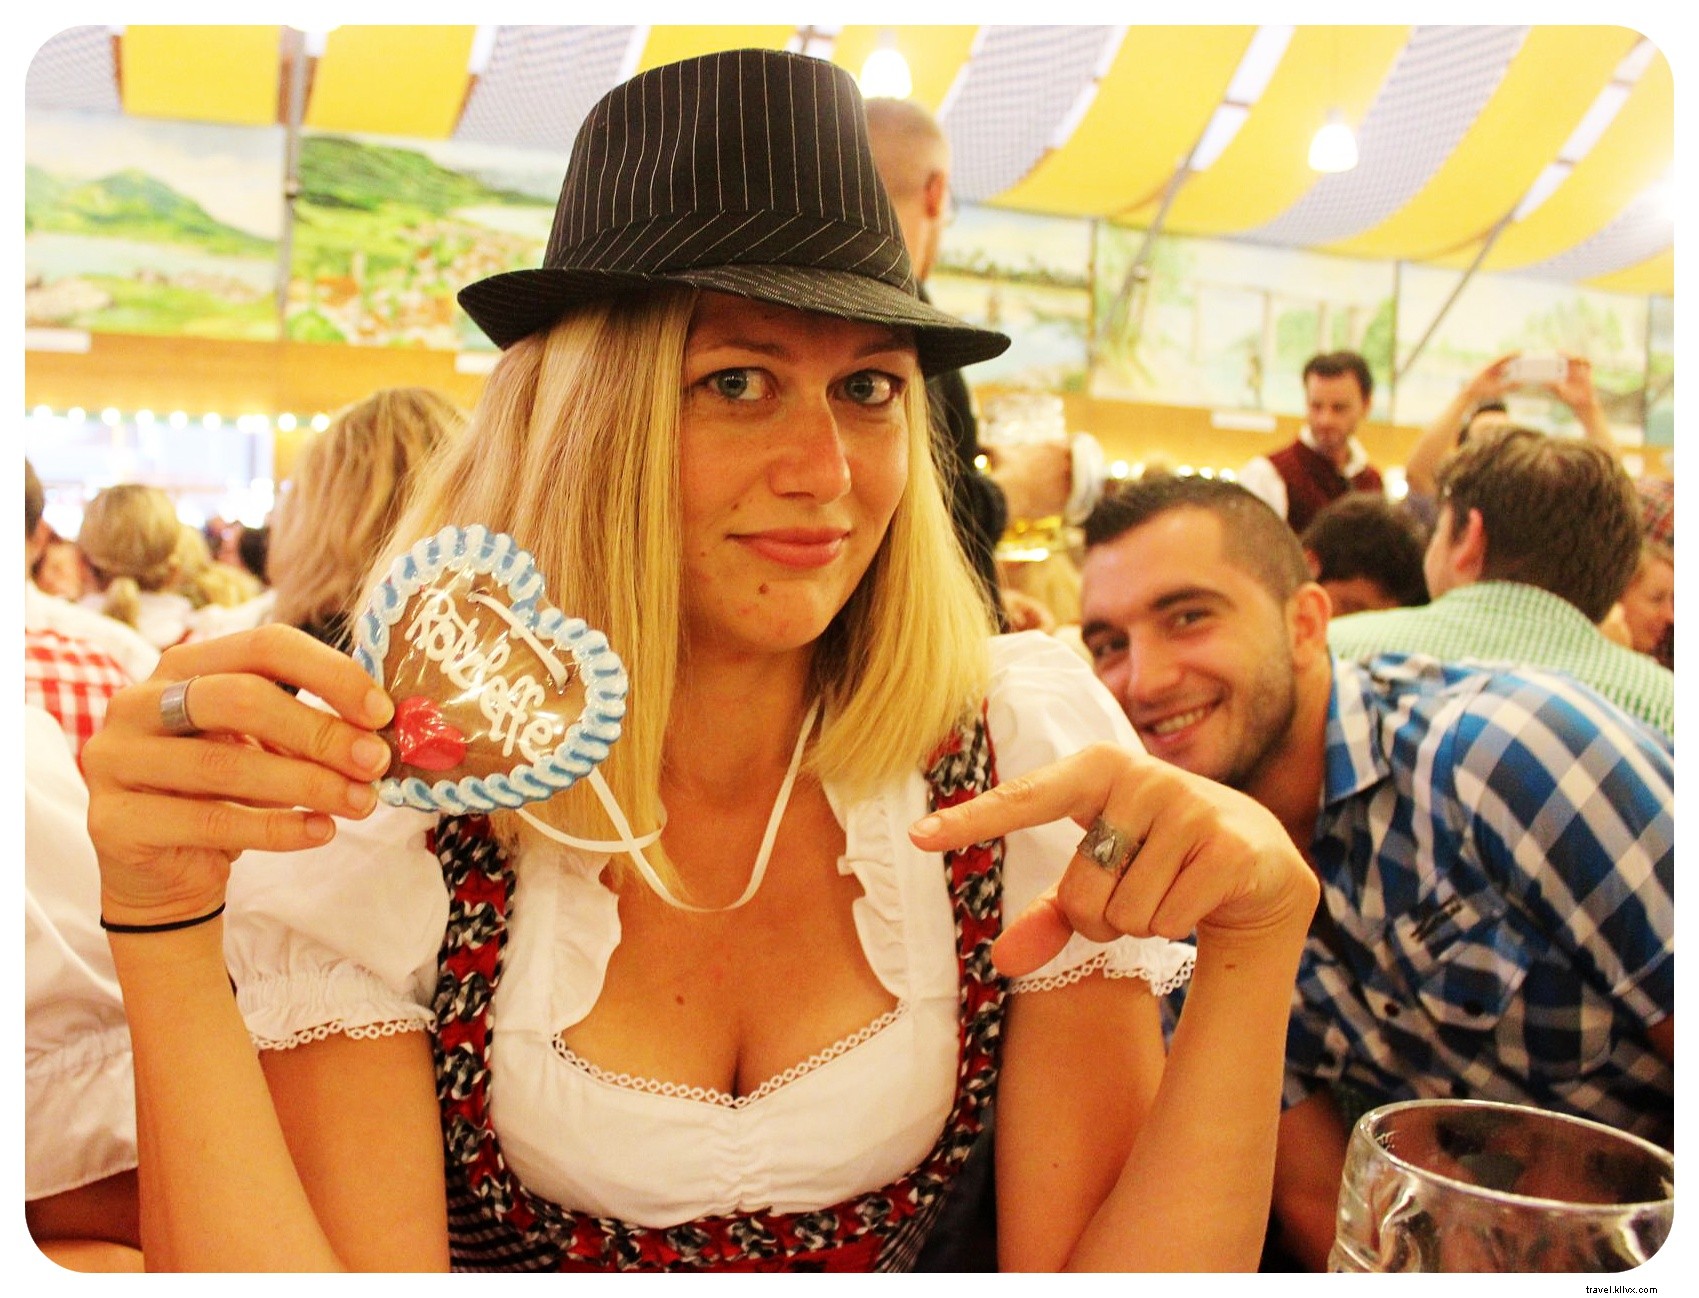 Um fim de semana Beerlicious na Oktoberfest em Munique